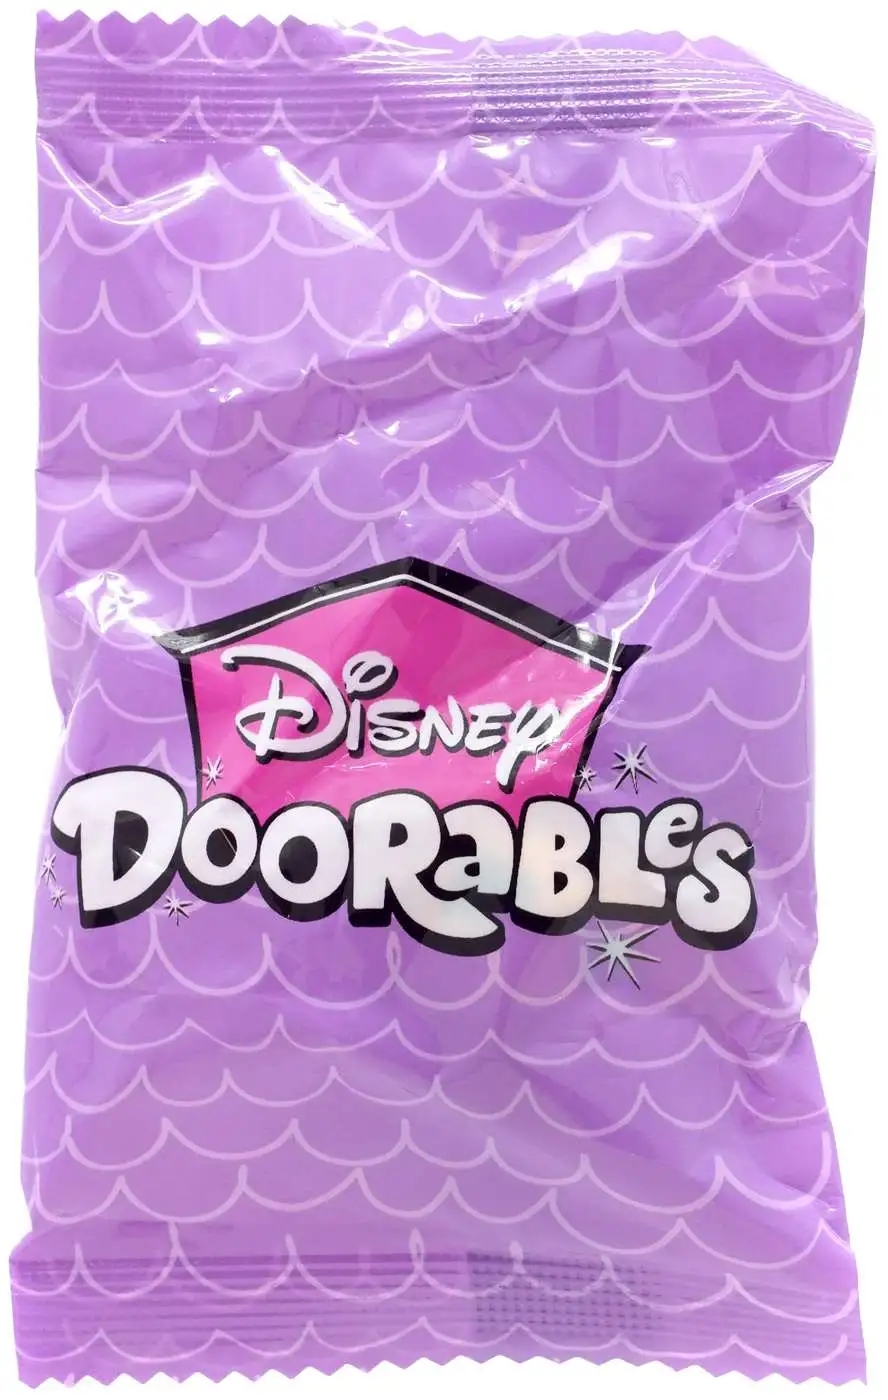 Disney Doorables Series 5 Mystery Single Pack [1 RANDOM Figure]